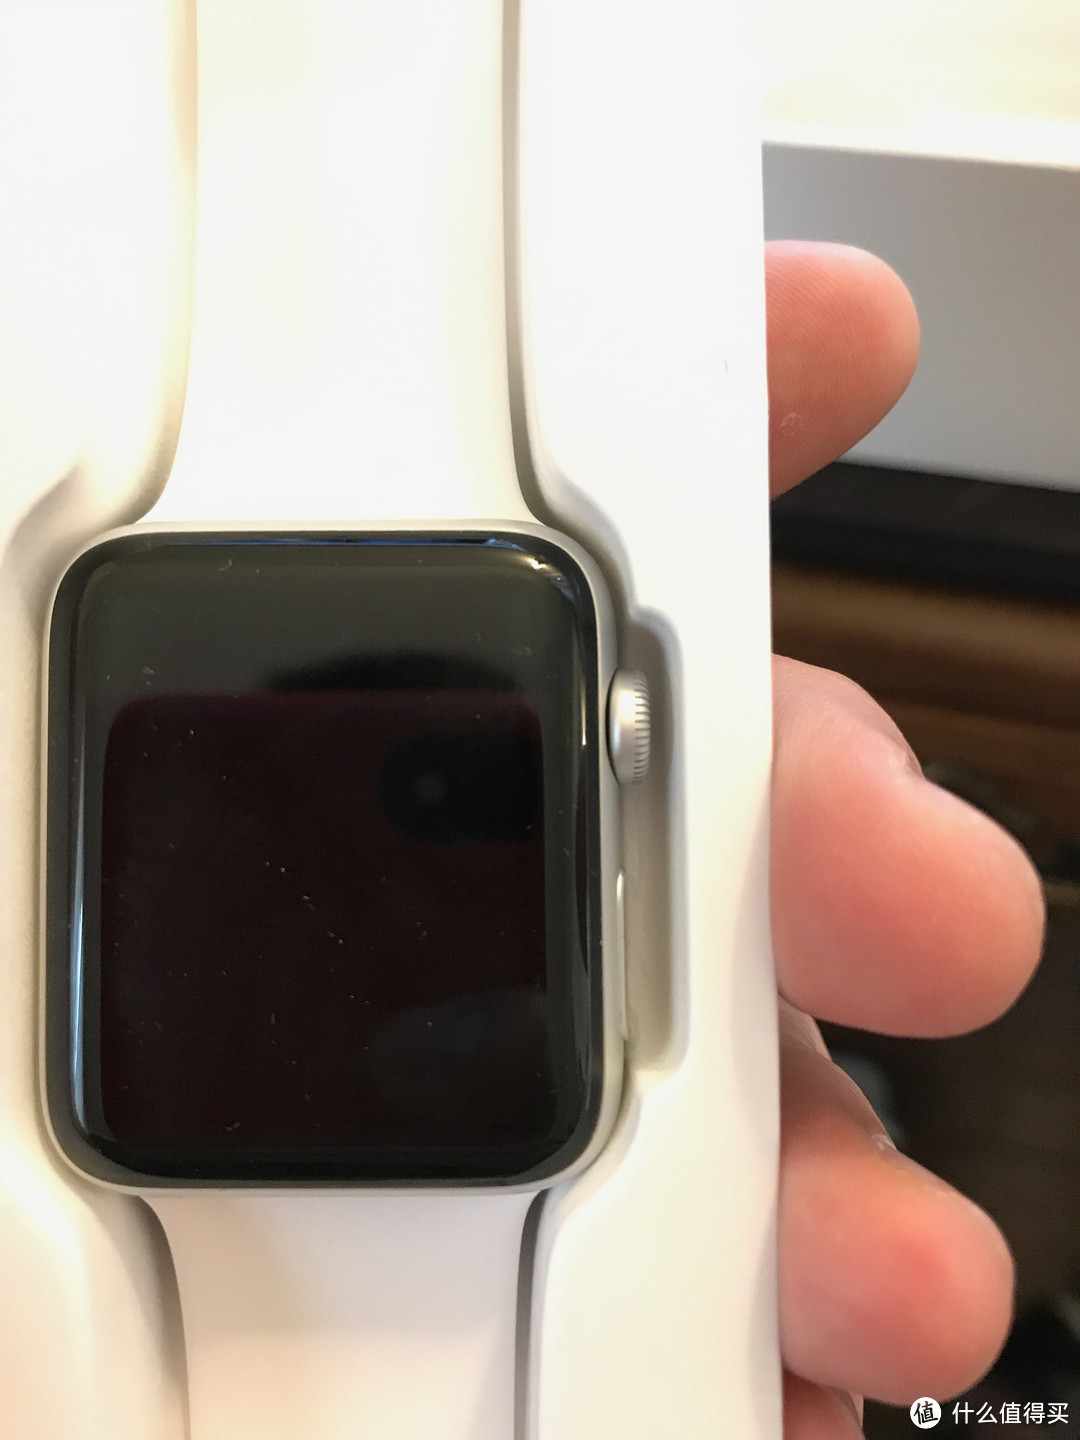 Ebay bestbuy官方店入Apple Watch series 2 开箱版